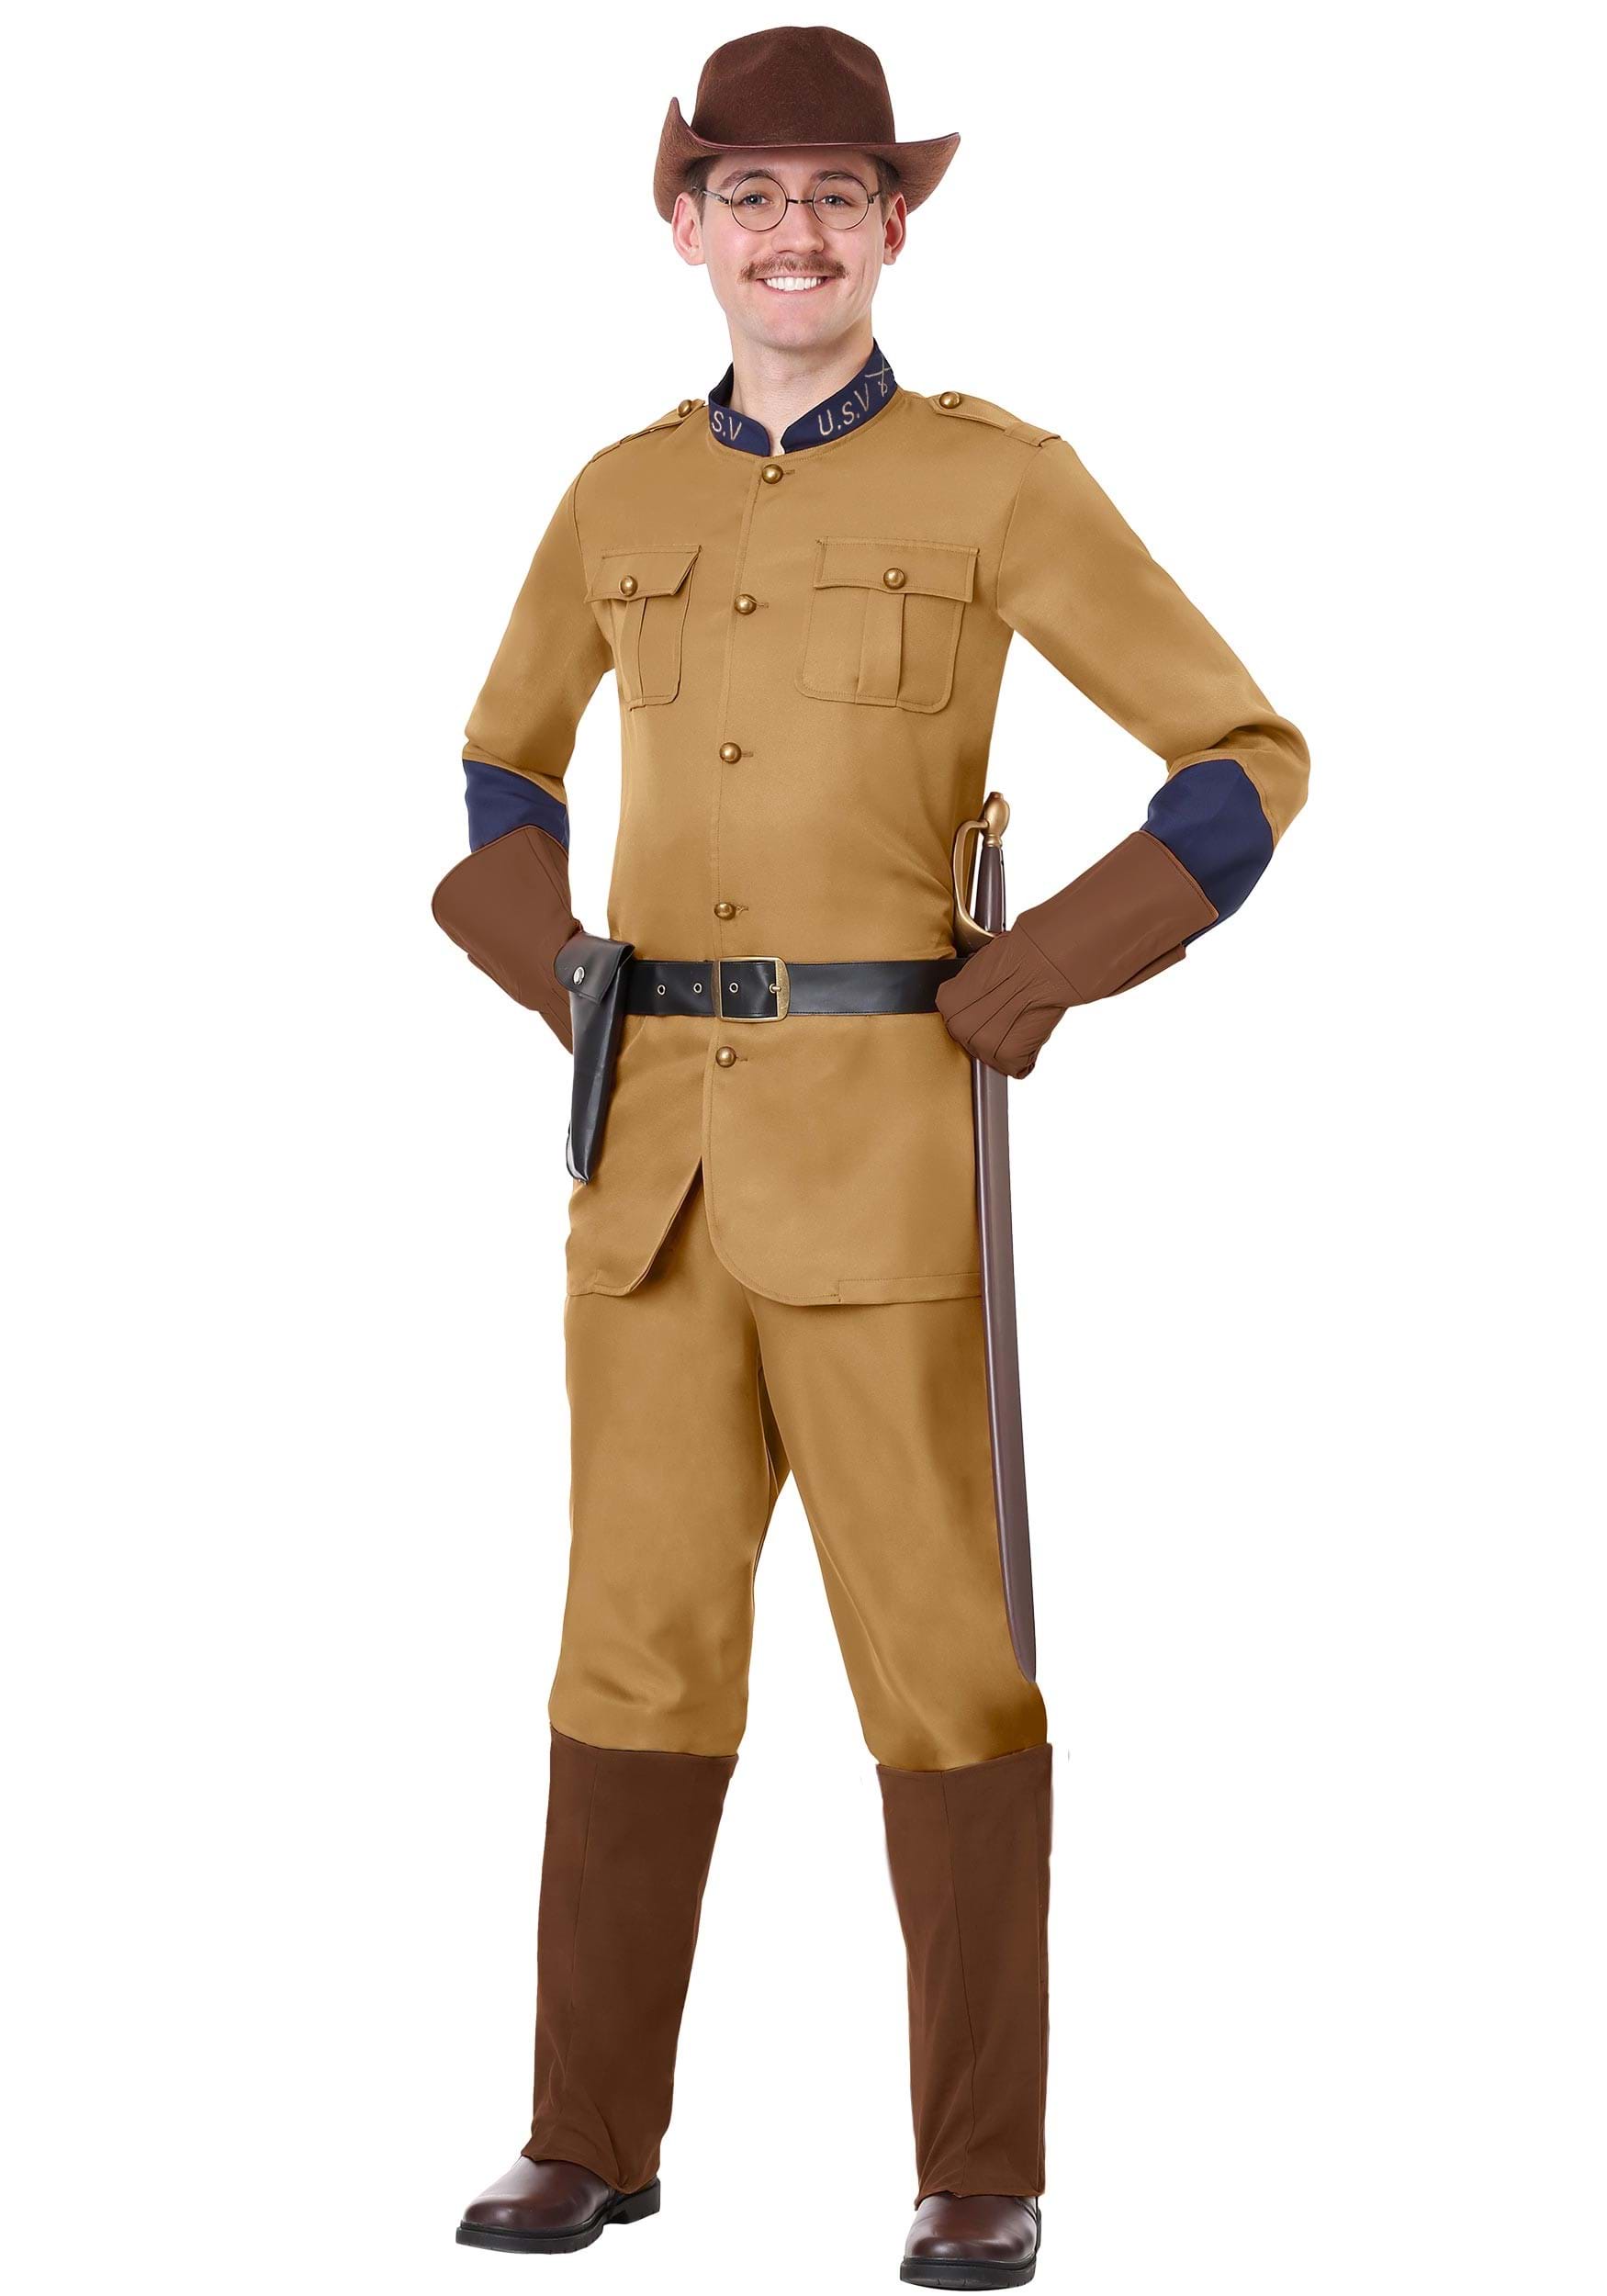 Teddy Roosevelt Costume for Men